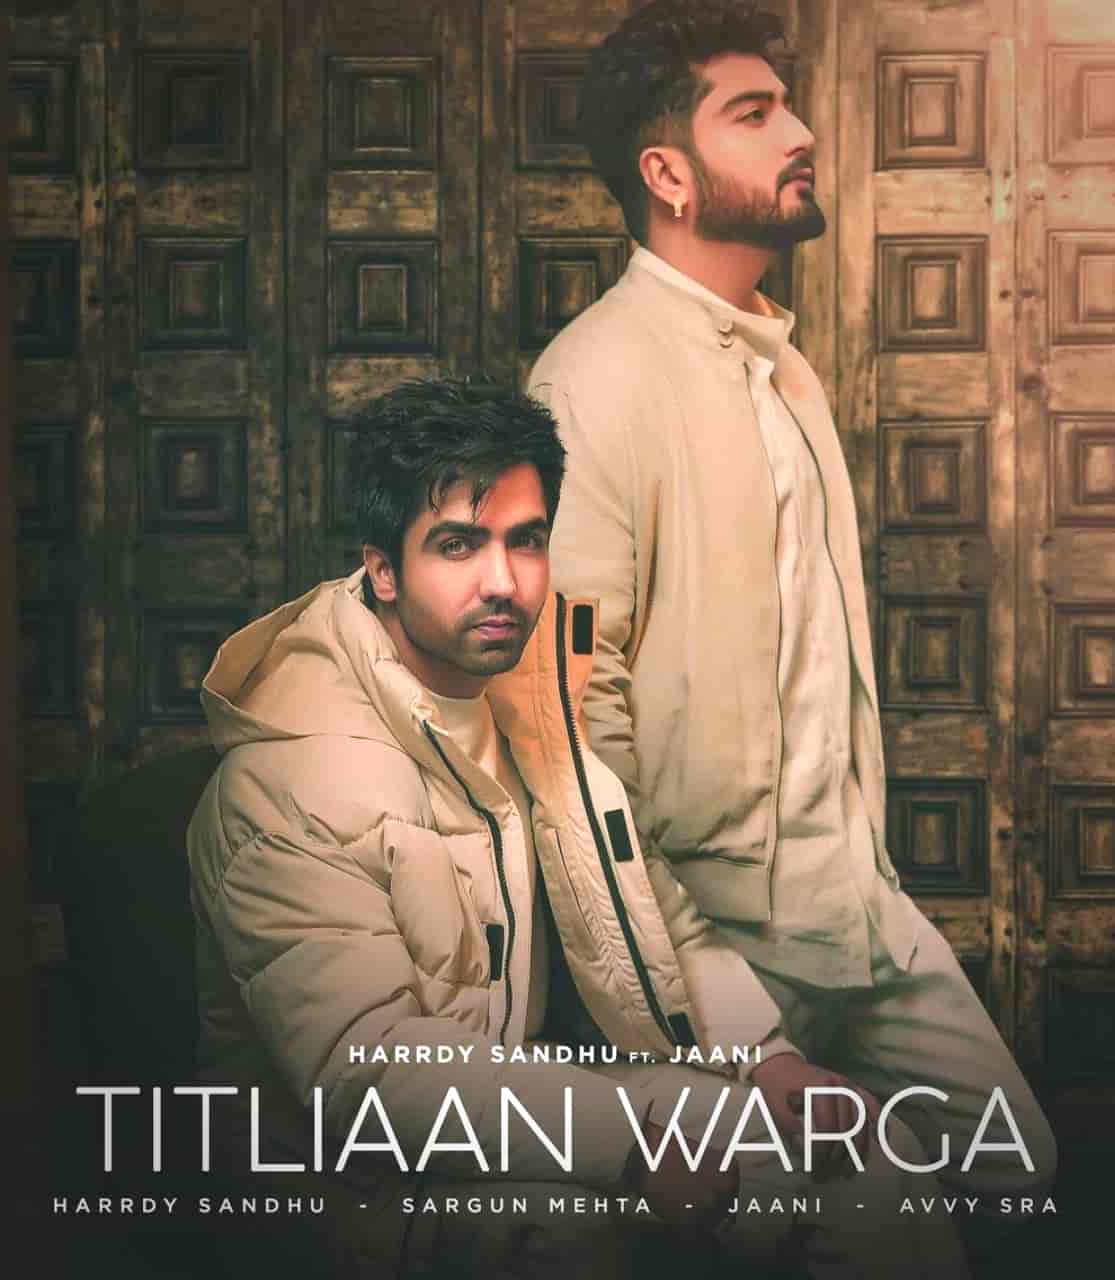 Titliaan Warga Punjabi Song Image Features Harrdy Sandhu, Jaani And Sargun Mehta